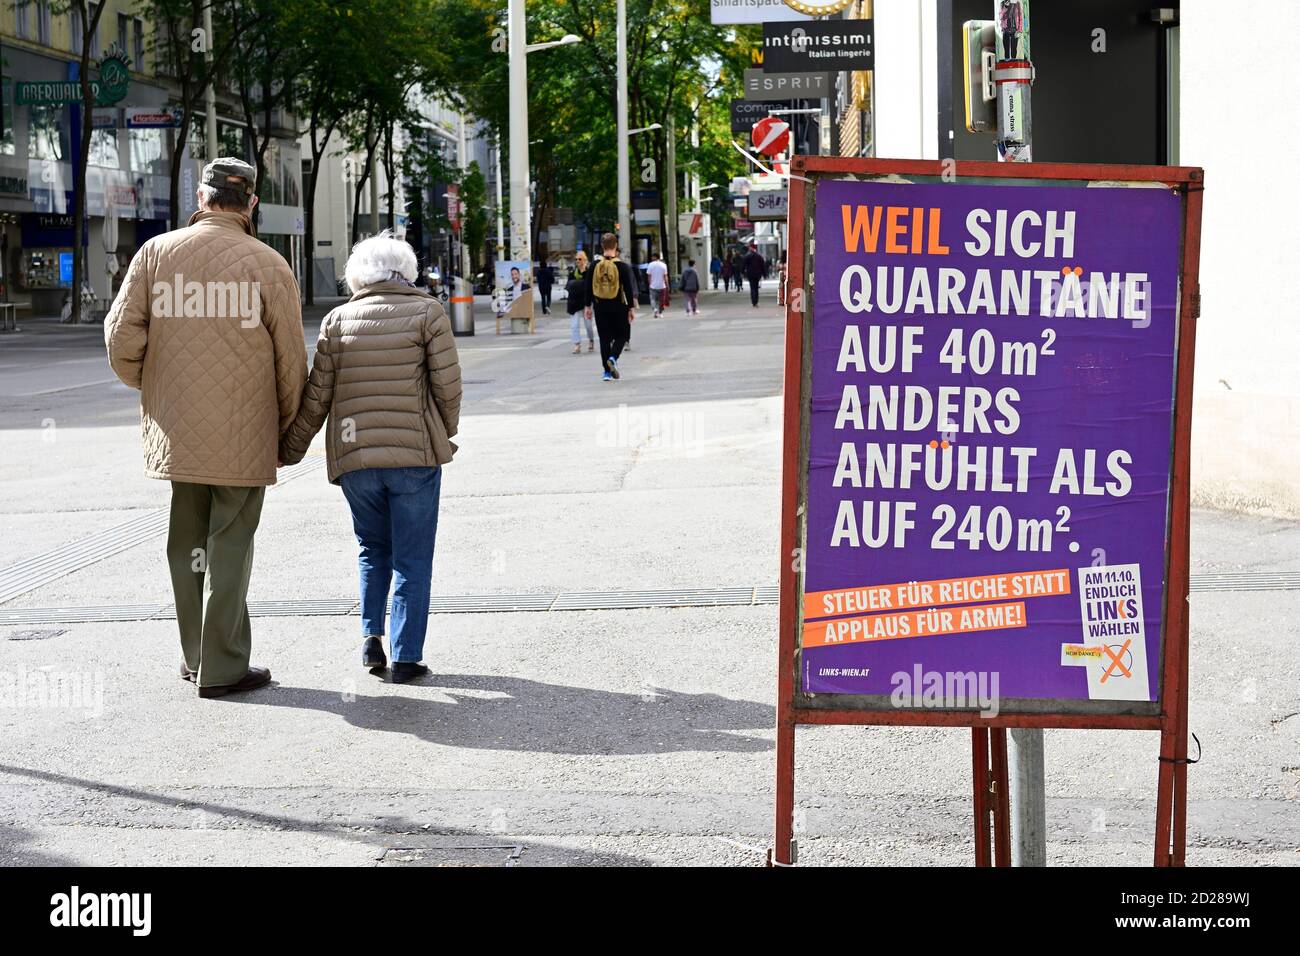 Vienne, Autriche. Affiche électorale (enfin, à gauche) dans Mariahilferstrasse. Parce que la quarantaine se sent différente sur 40 mètres carrés que sur 240 carrés Banque D'Images